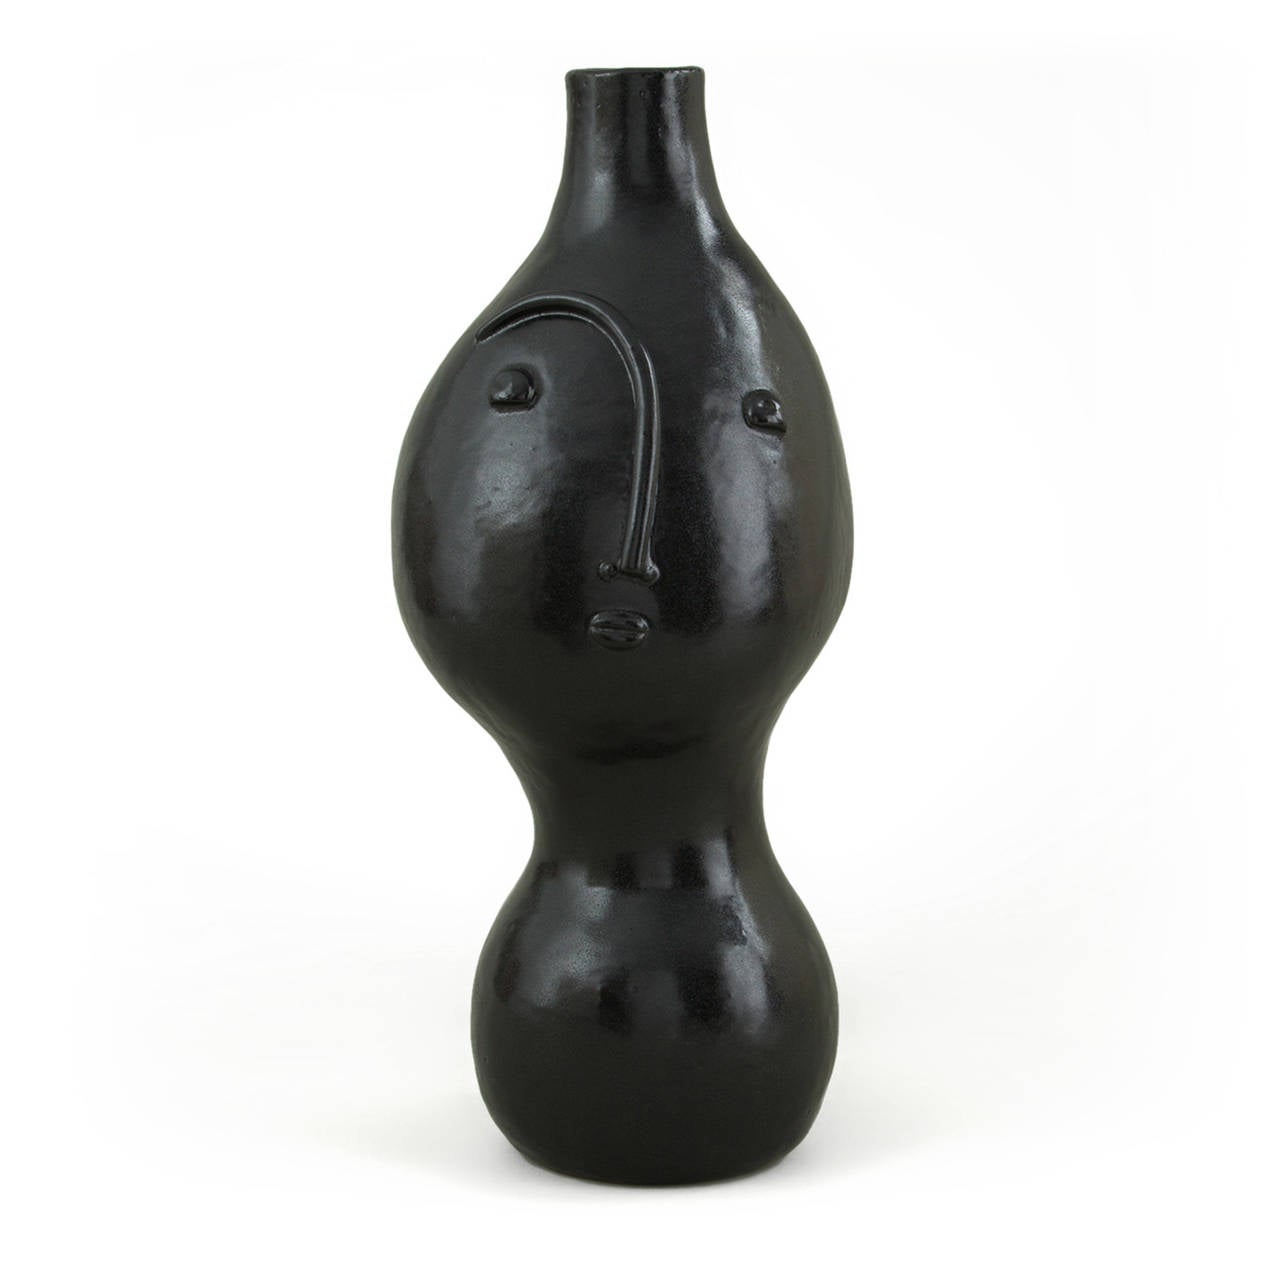 Black Enameled Stoneware Lamp by Dalo, 2014. Unique piece.

Dimensions: H 46 cm - W 20 cm - D 31 cm

Dalo is a ceramic work­shop that reunites Paris ceramists Daniel and Loïc under a com­mon con­cept and know-how. Instantly rec­og­niz­able in